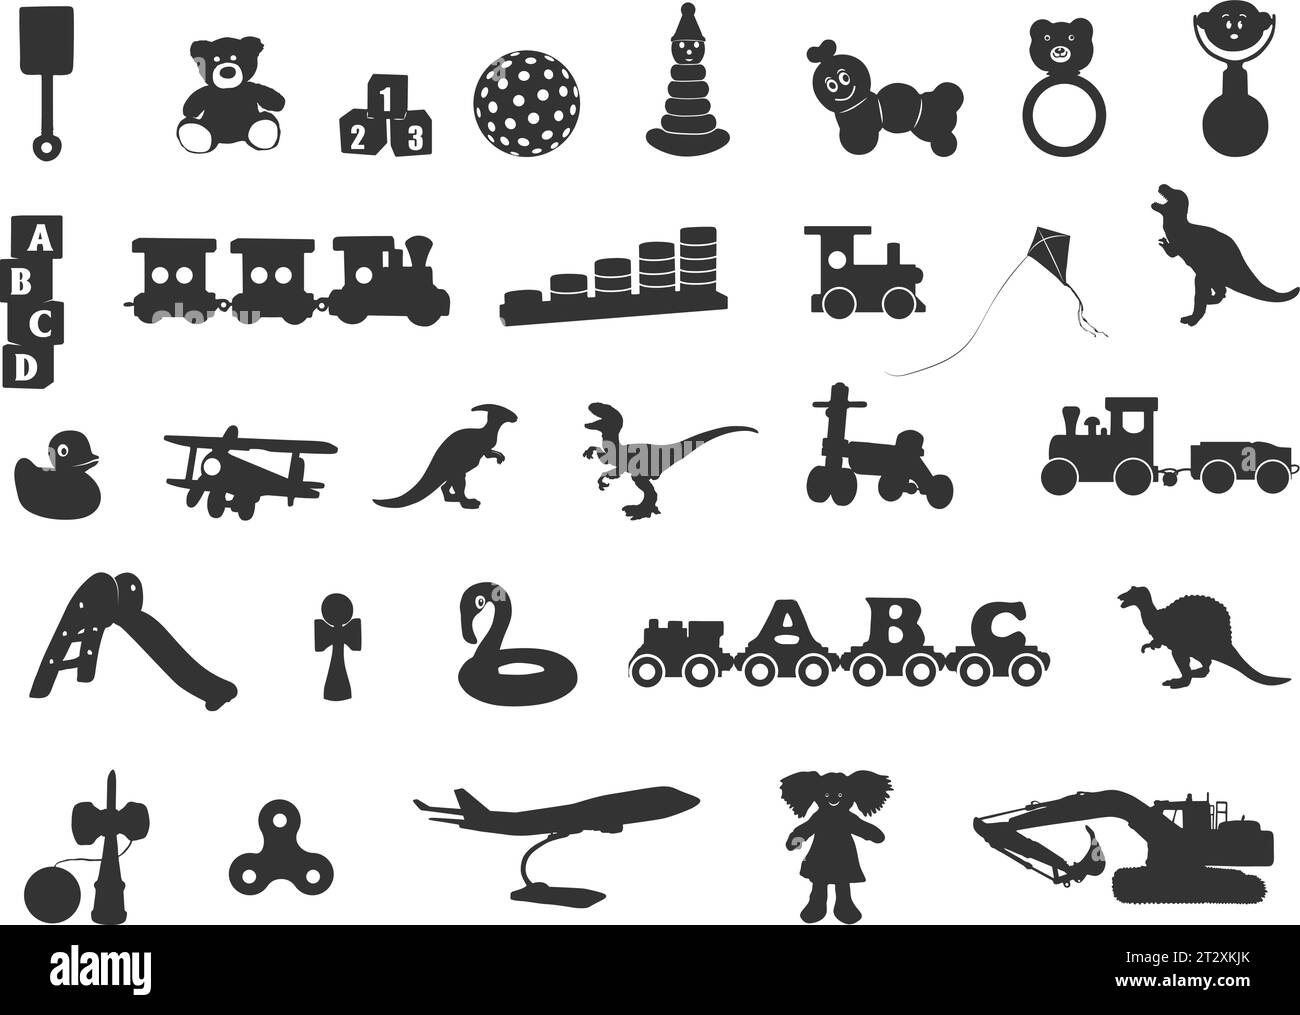 Silhouettes de jouets pour enfants, silhouette de jouets pour enfants, silhouettes de jouets pour bébé, jouets svg, ensemble d'icônes de silhouette de jouets Illustration de Vecteur